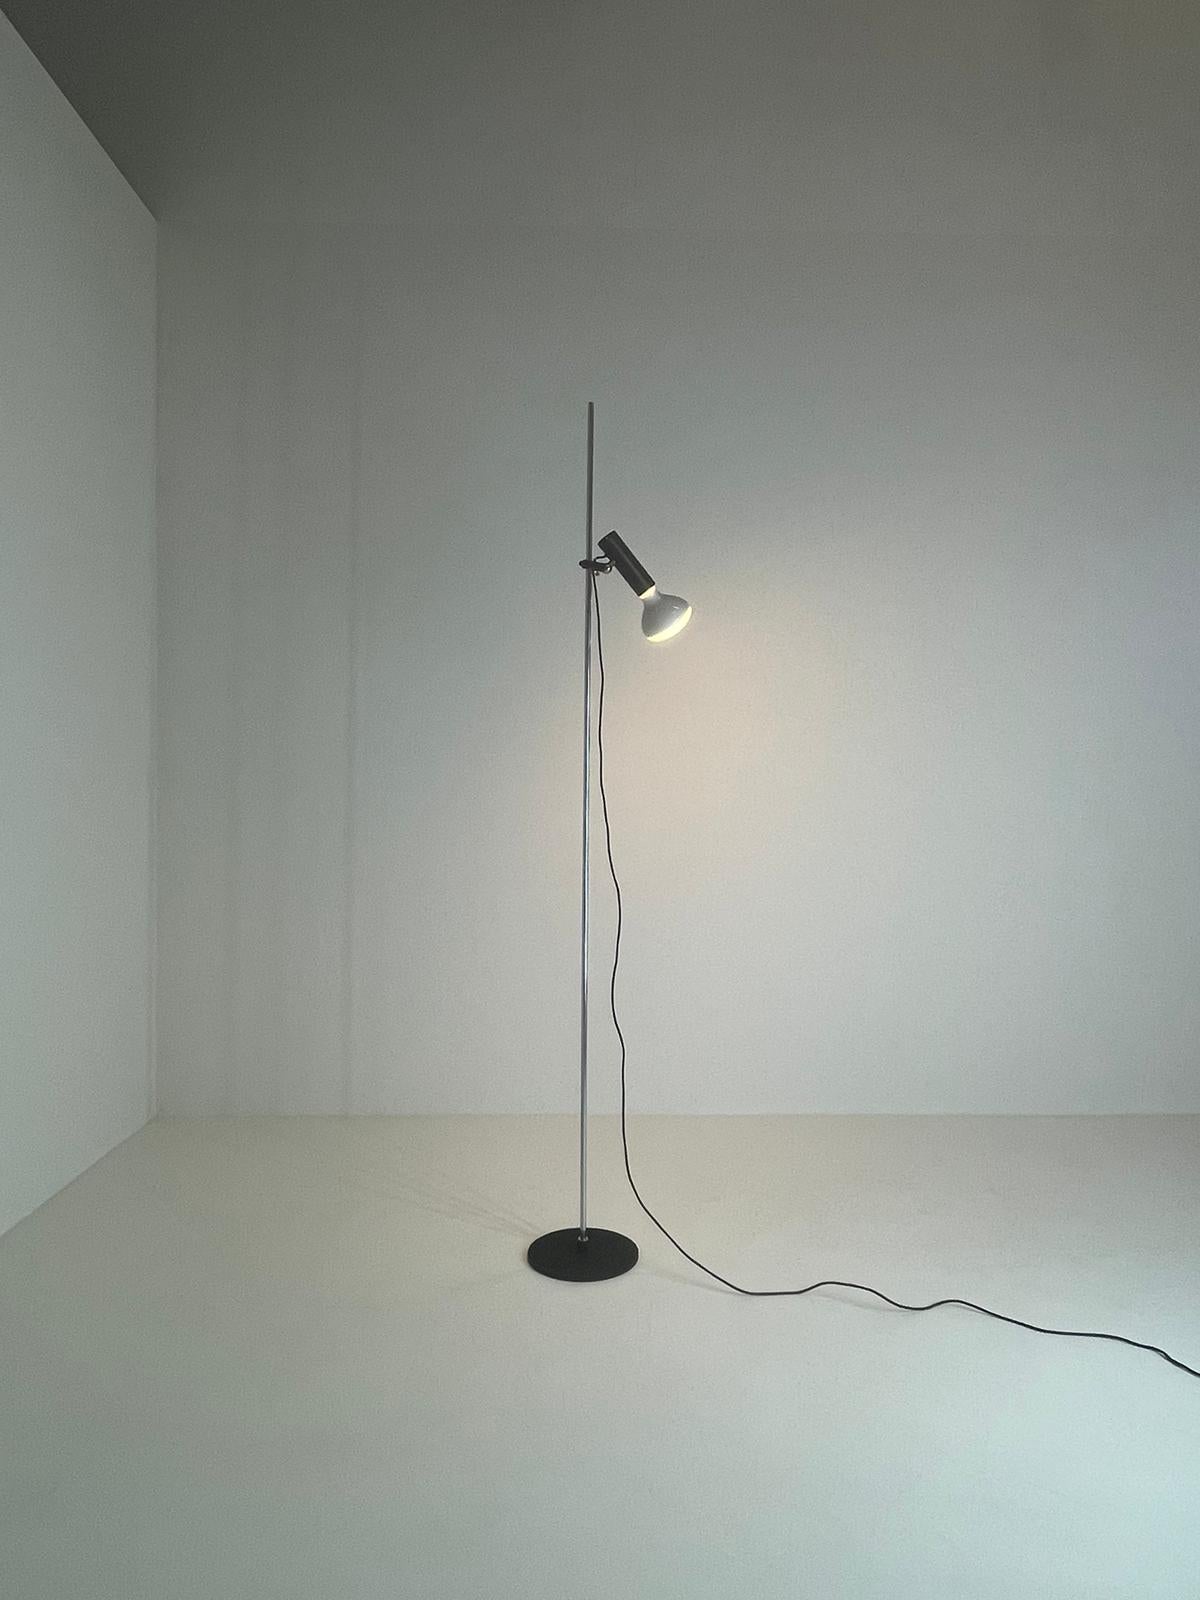 Mid-Century Modern Gino Sarfatti Arteluce Mod 1055 Floor Lamp Black Iron Chrome Aluminum Italy 1955 For Sale